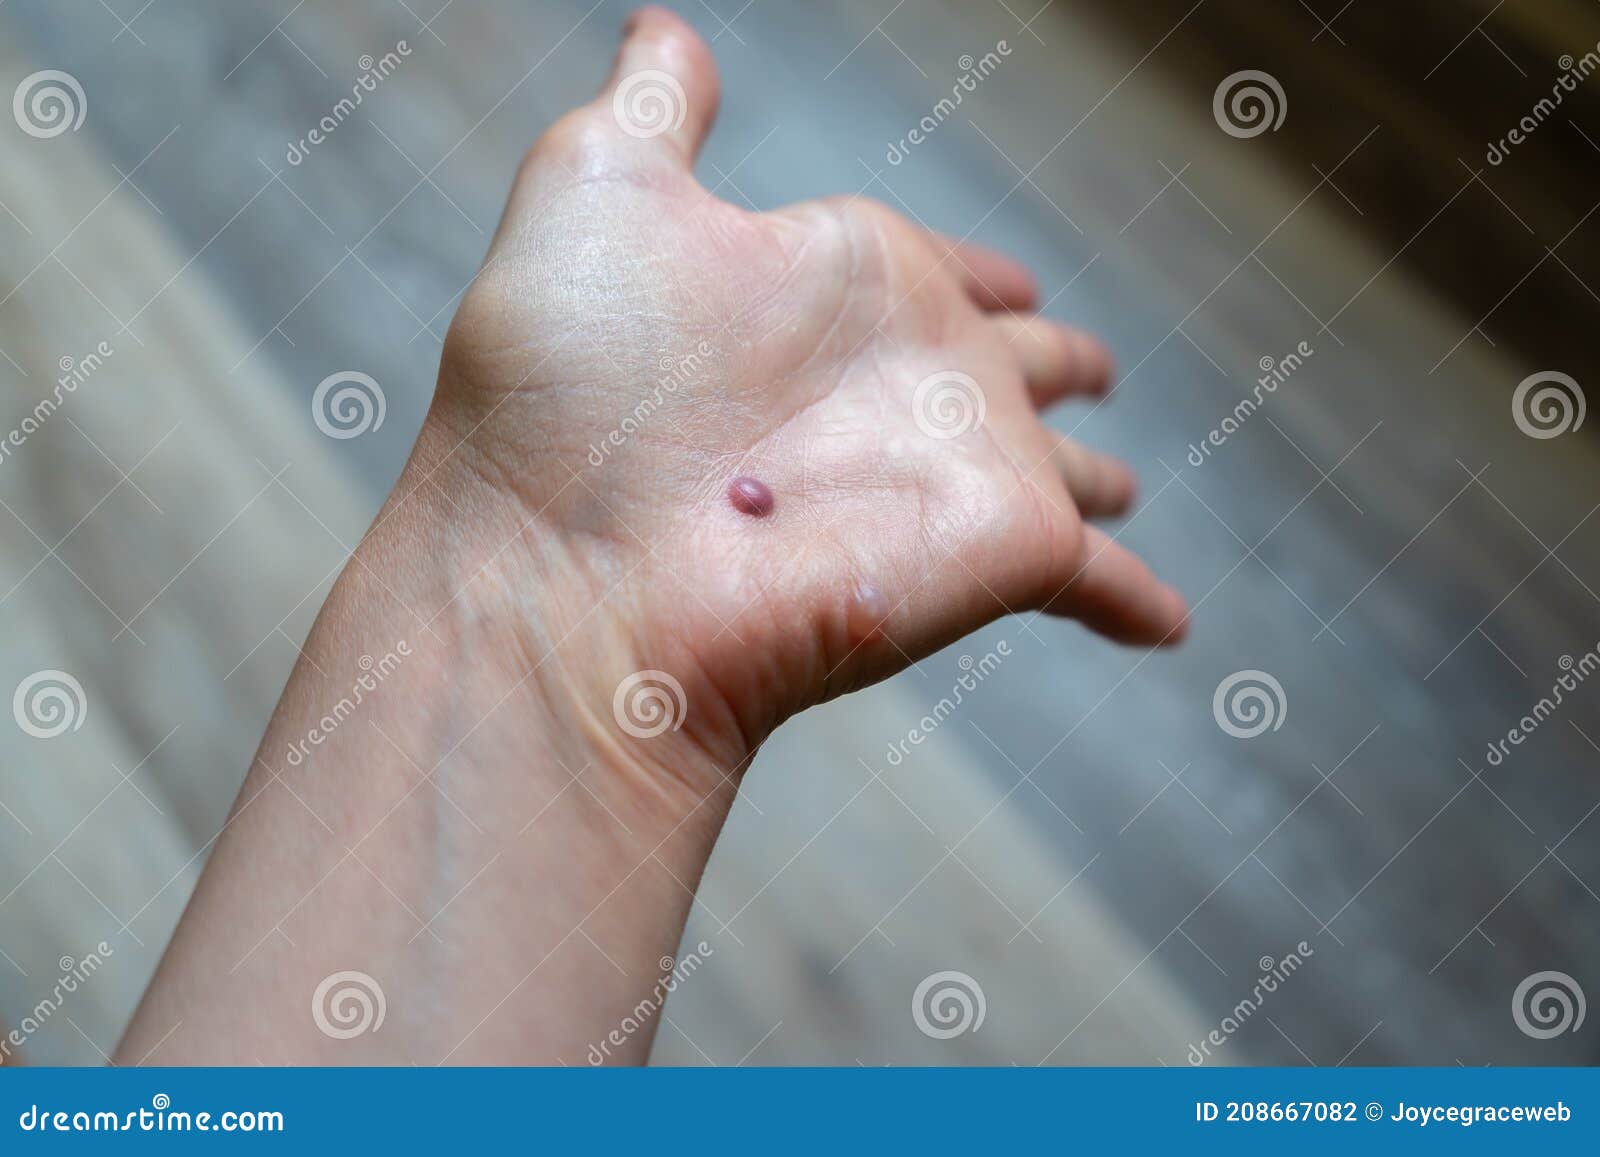 human papillomavirus infection on hands